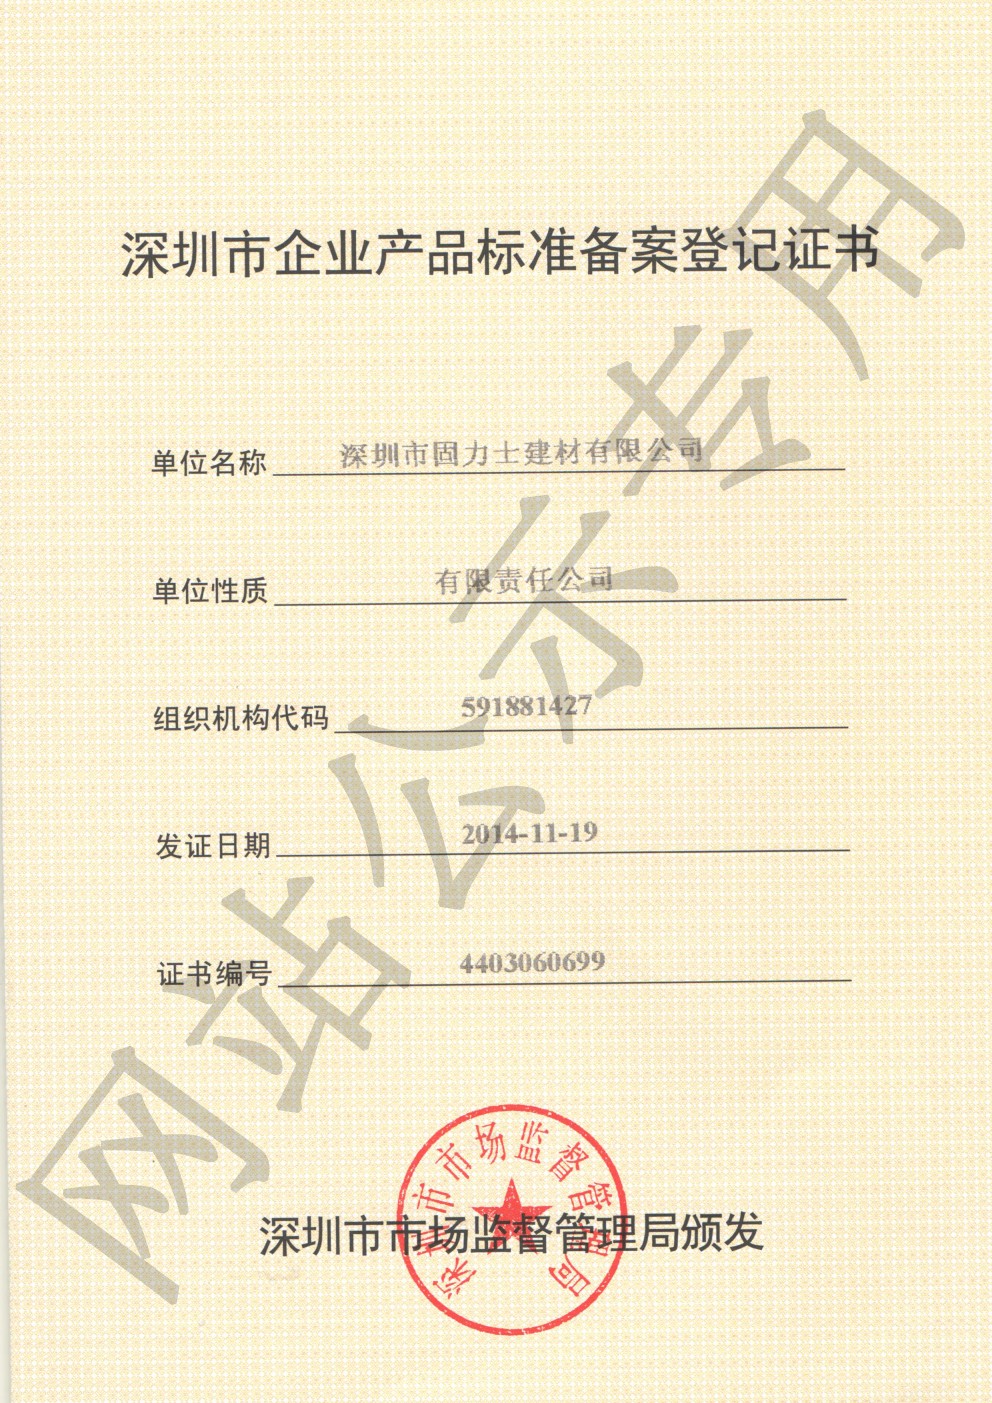 盐亭企业产品标准登记证书